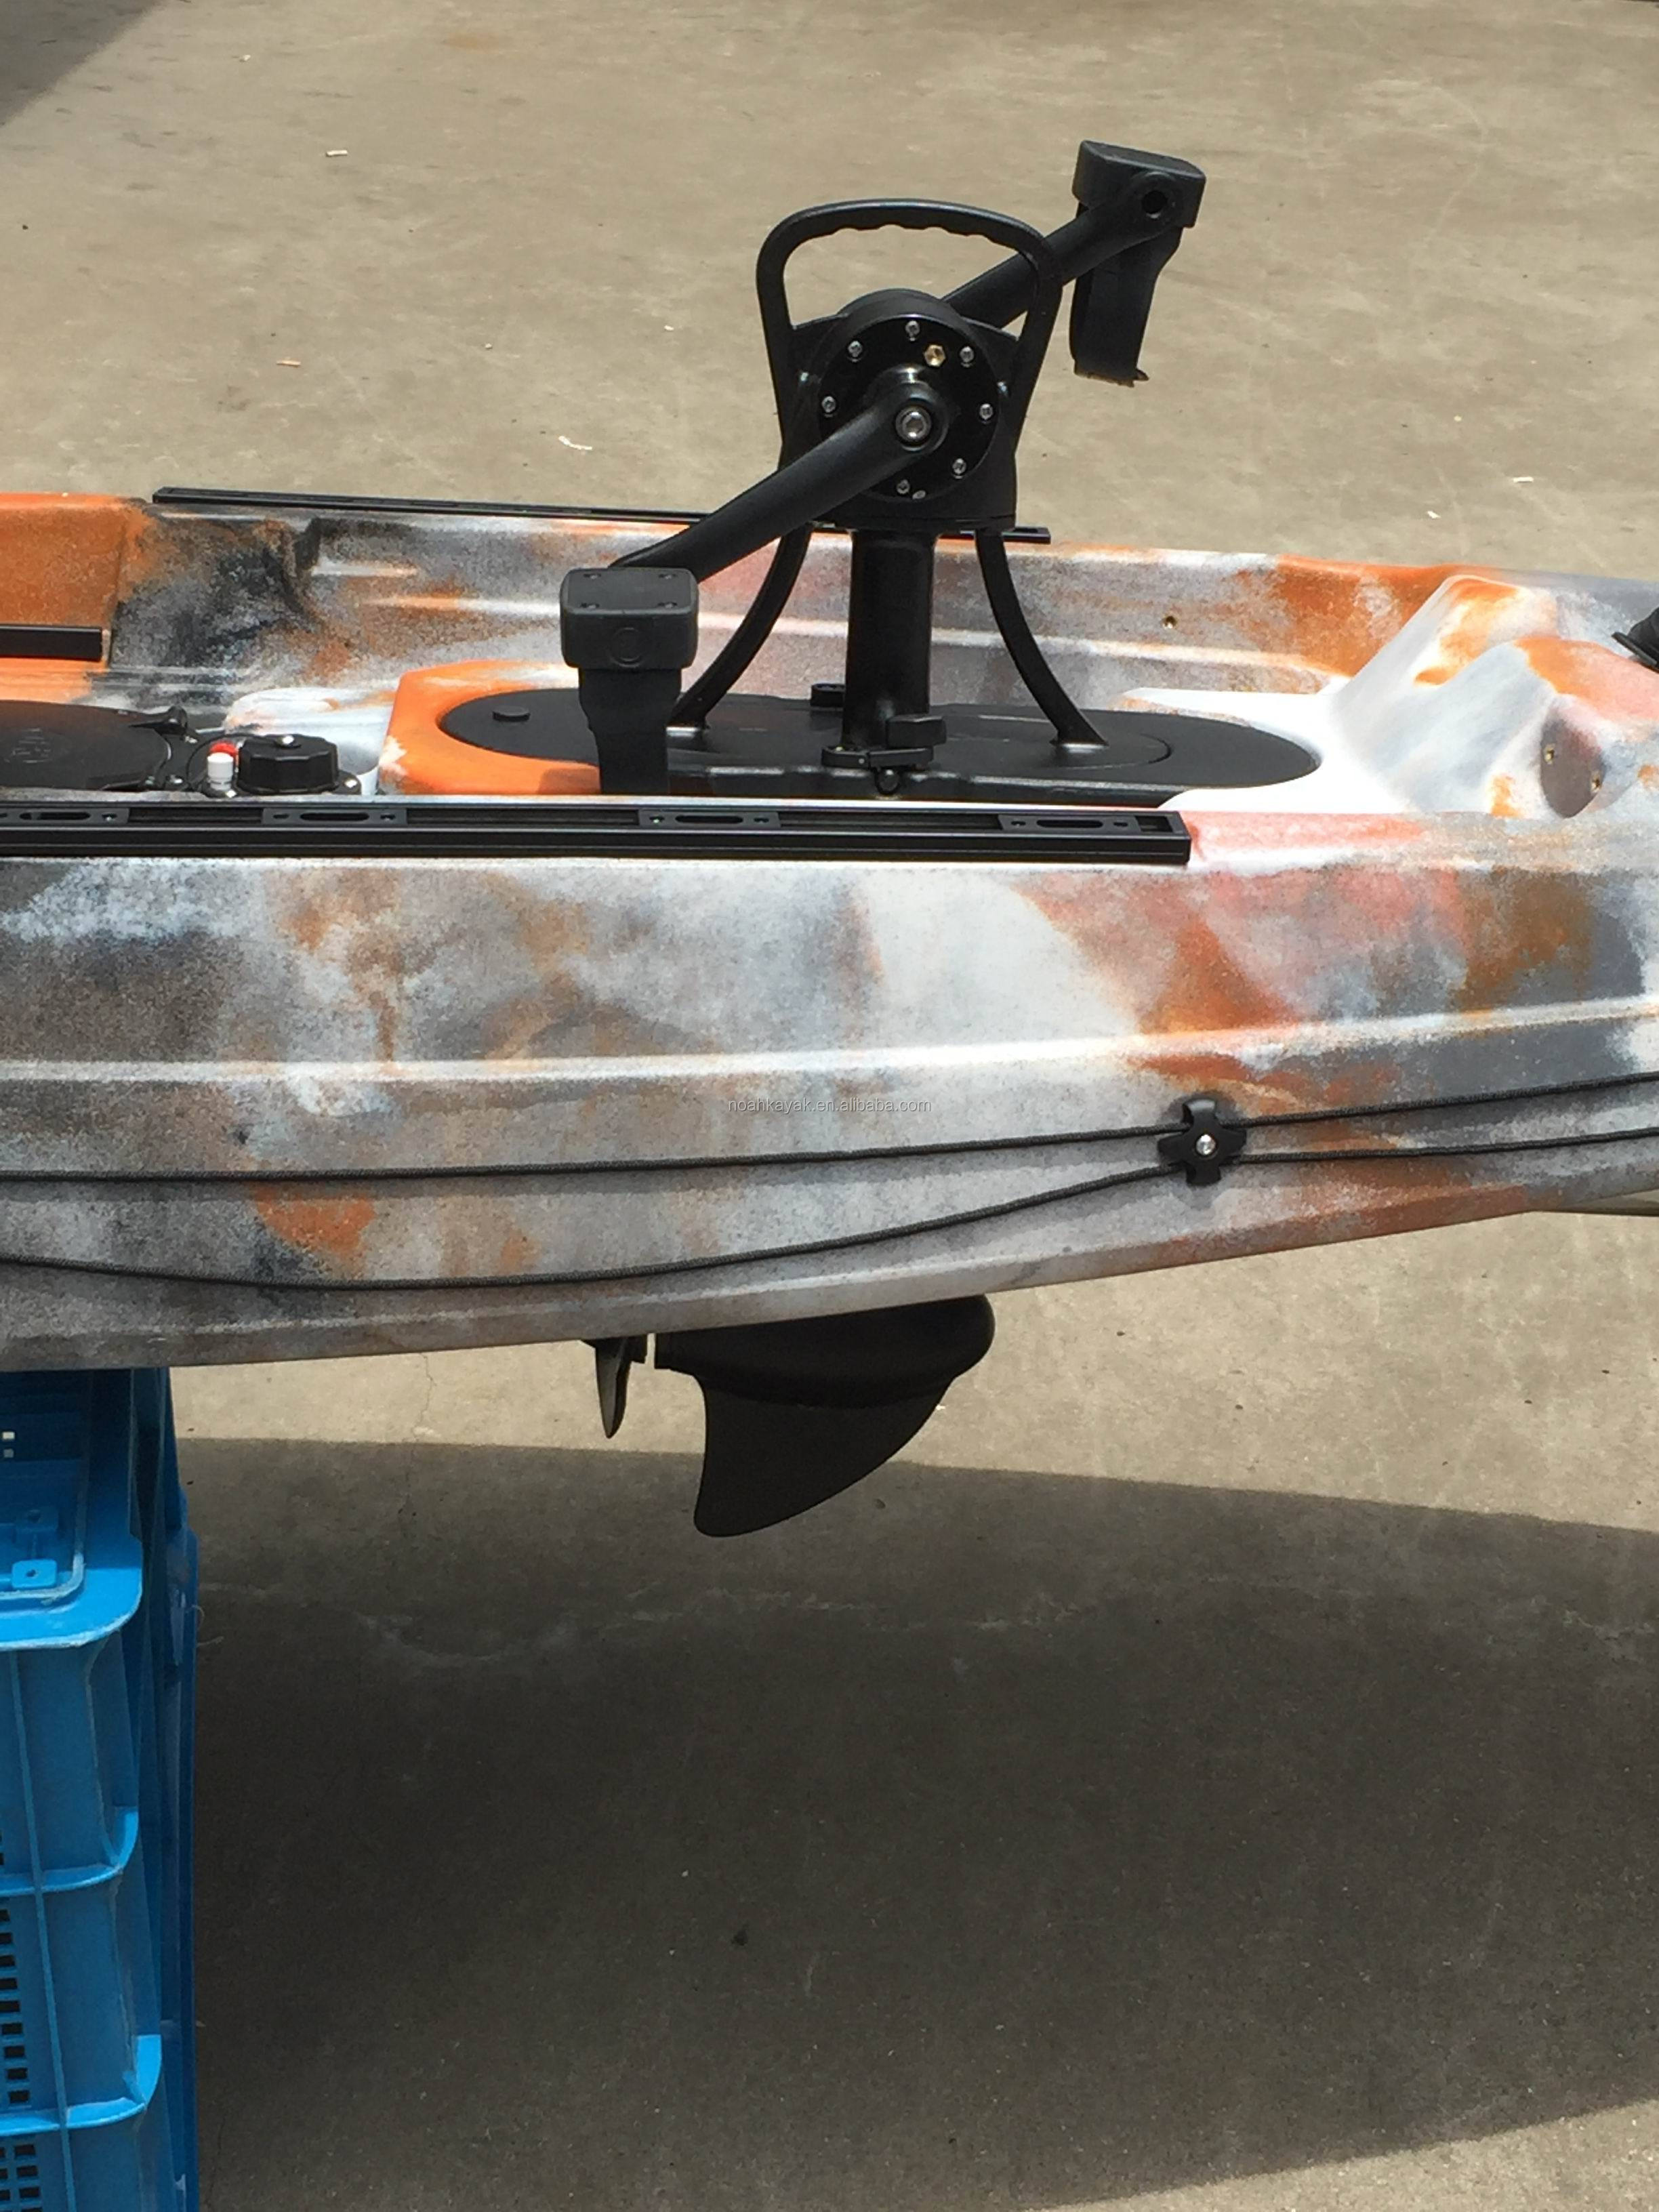 3,6 meter kayak memancing tunggal duduk di atas motor listrik dan kayak pedal